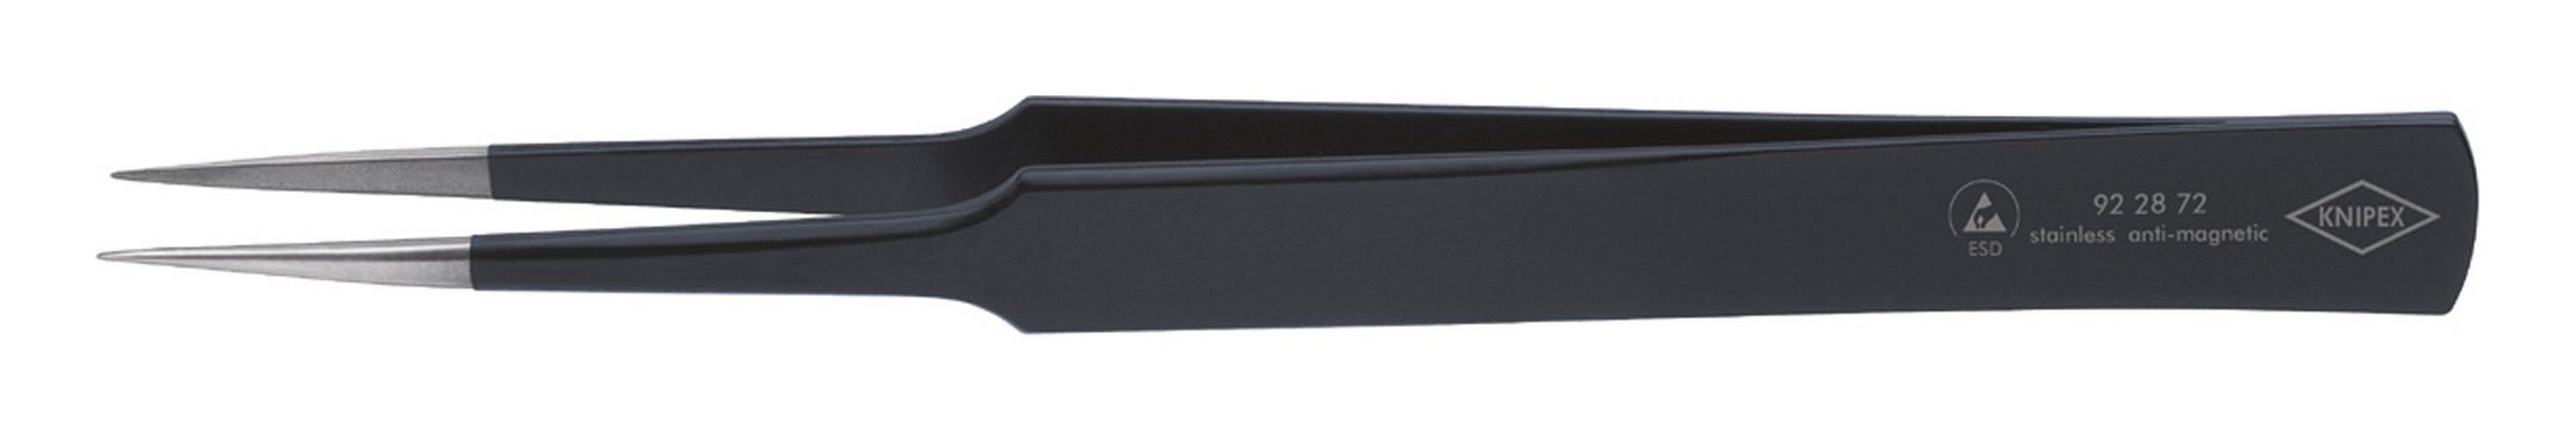 Knipex Pinzette, ESD US-Nadelform 135 mm schwarz